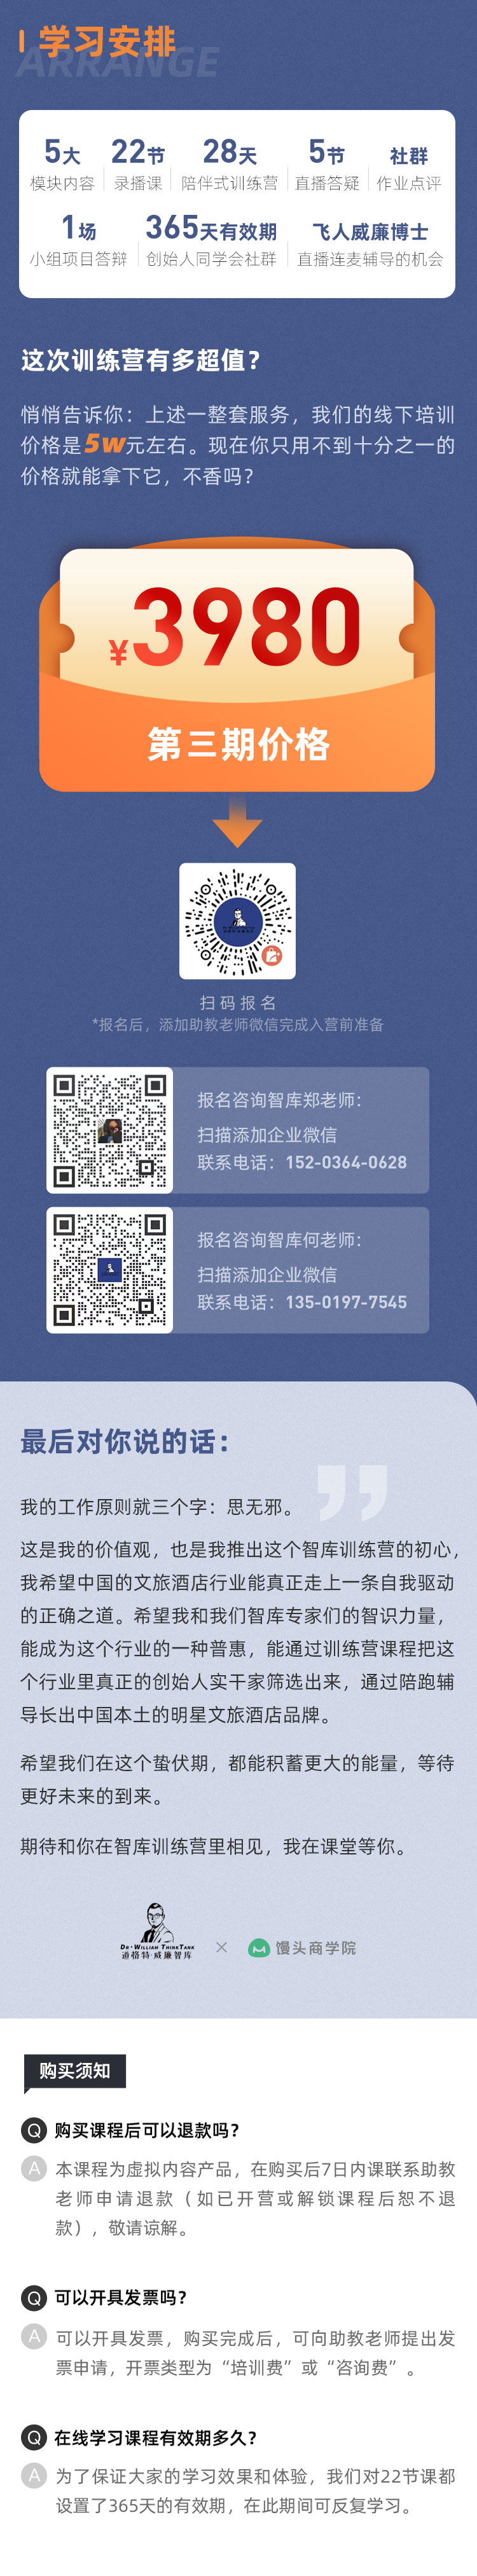 http://mtedu-img.oss-cn-beijing-internal.aliyuncs.com/ueditor/20230512112248_261541.jpg